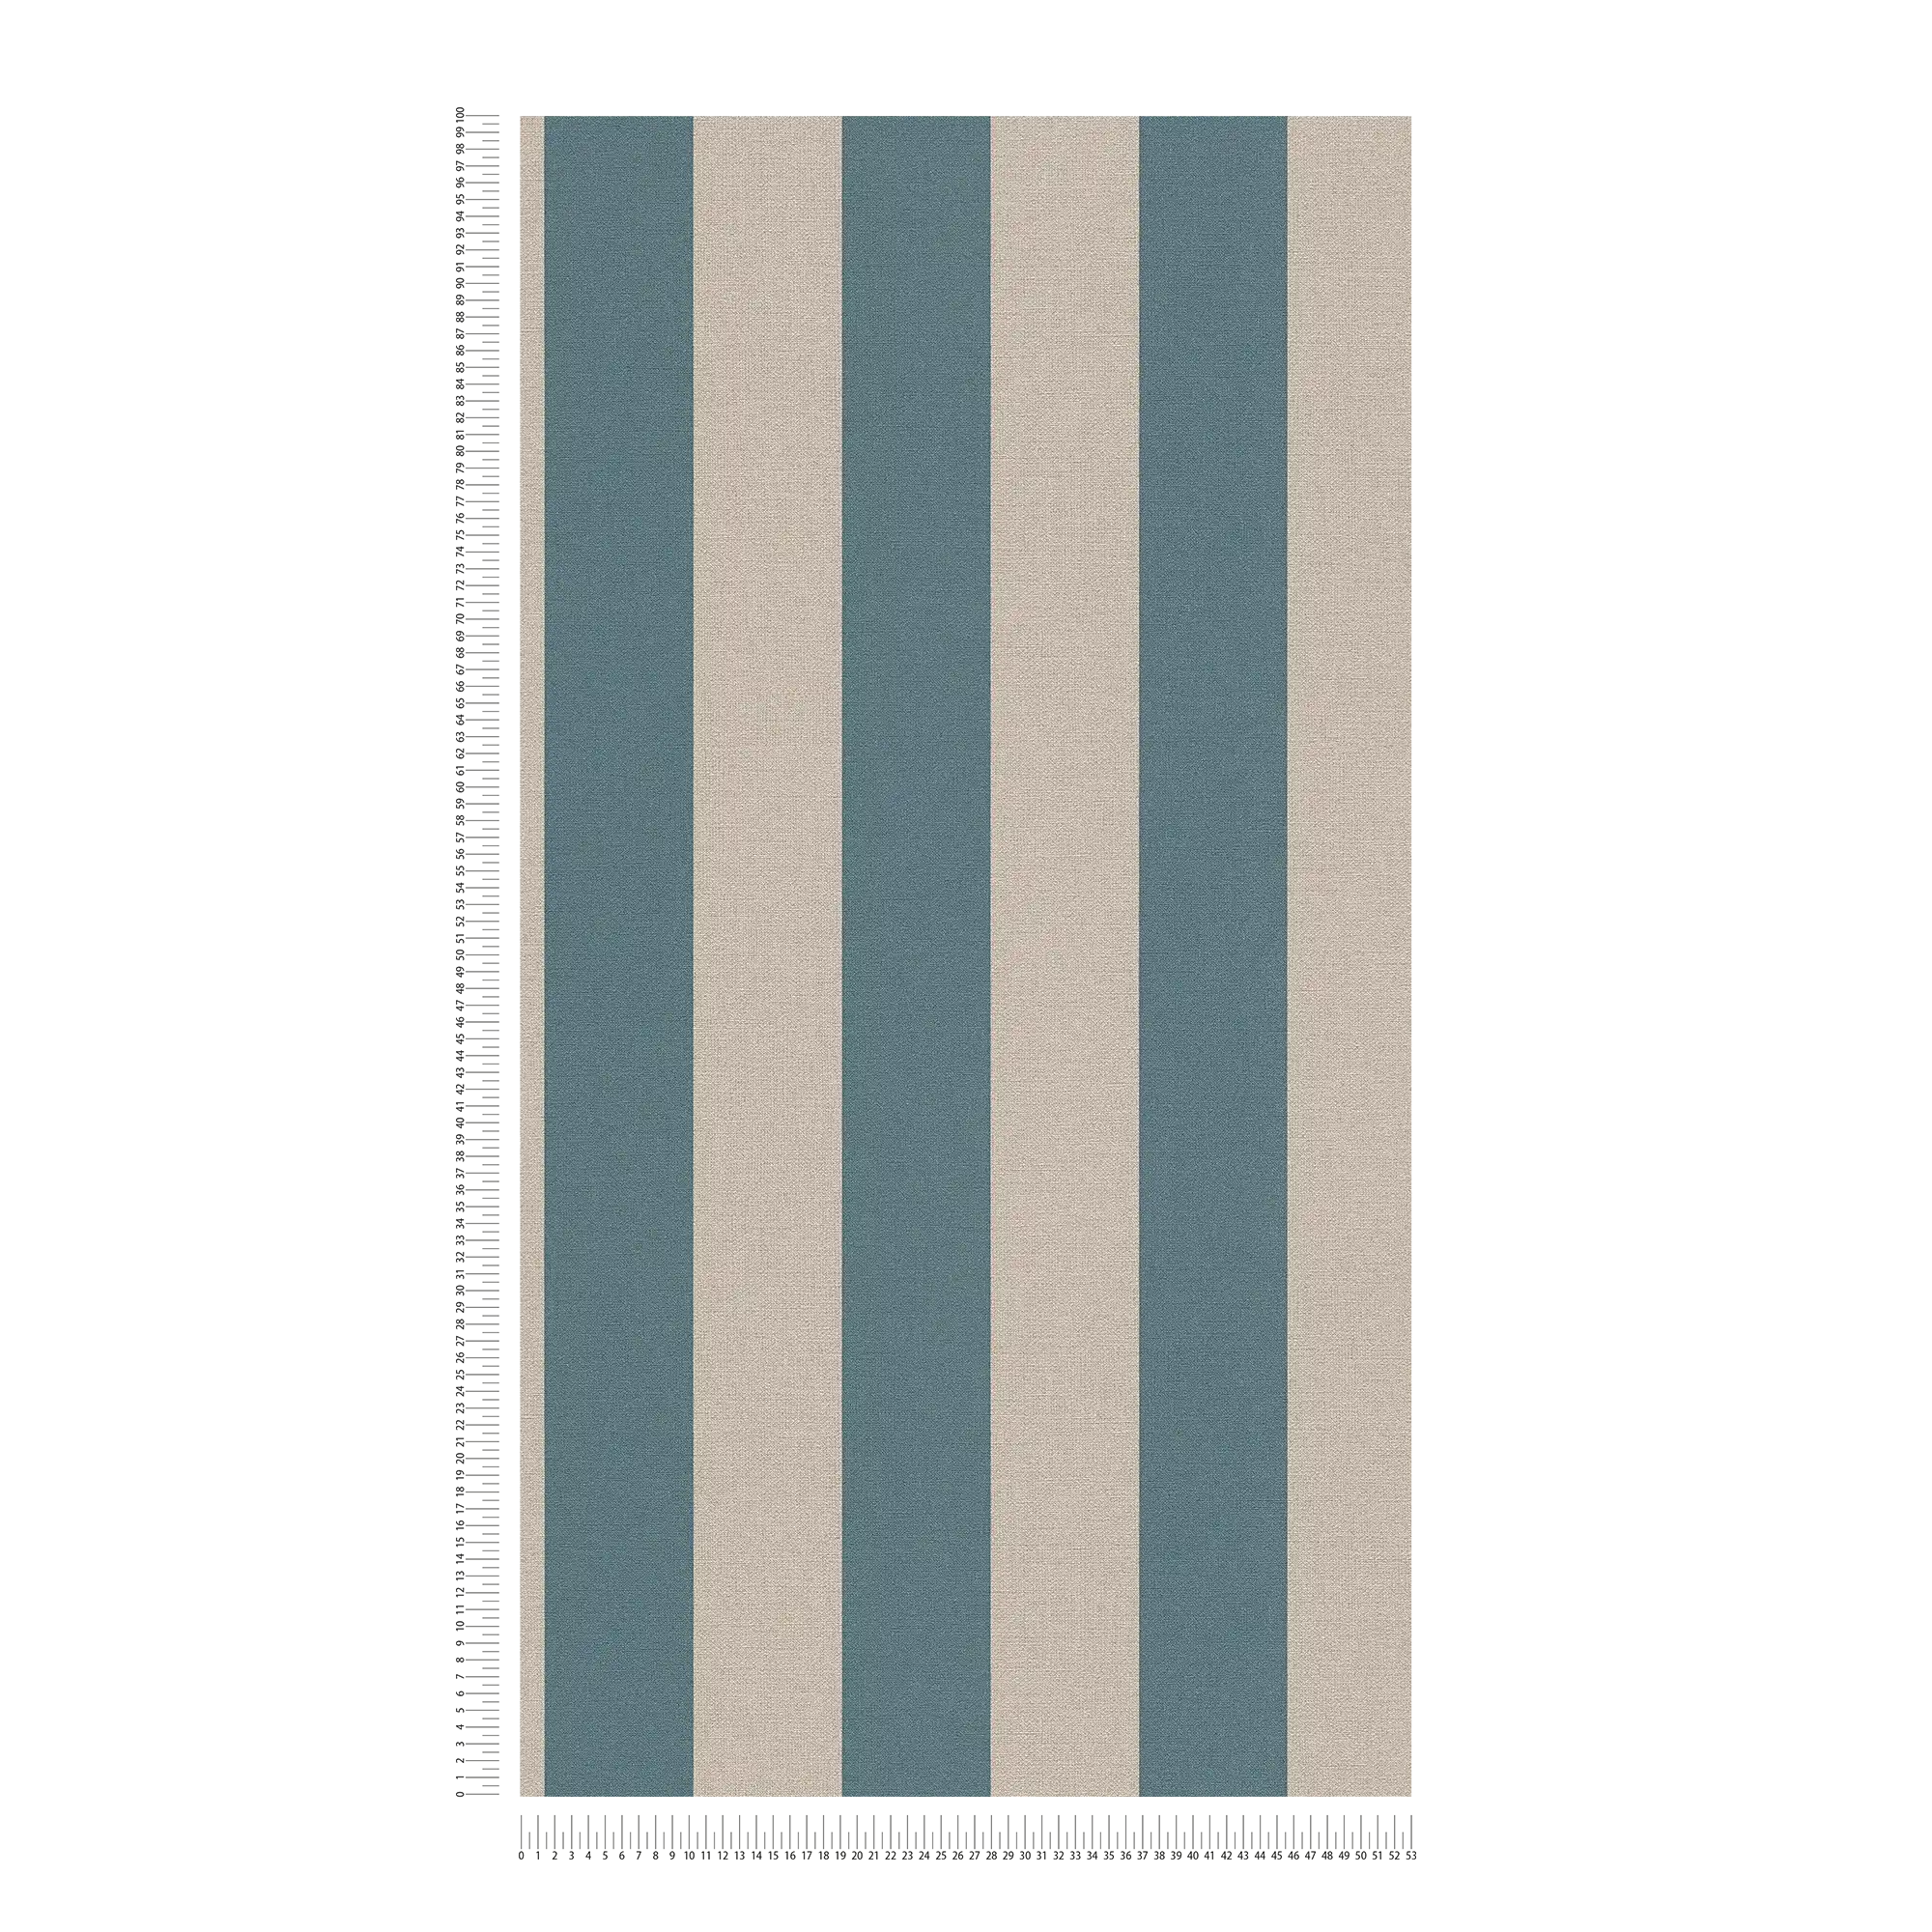             Gestreept behang met linnenlook PVC-vrij - blauw, bruin
        